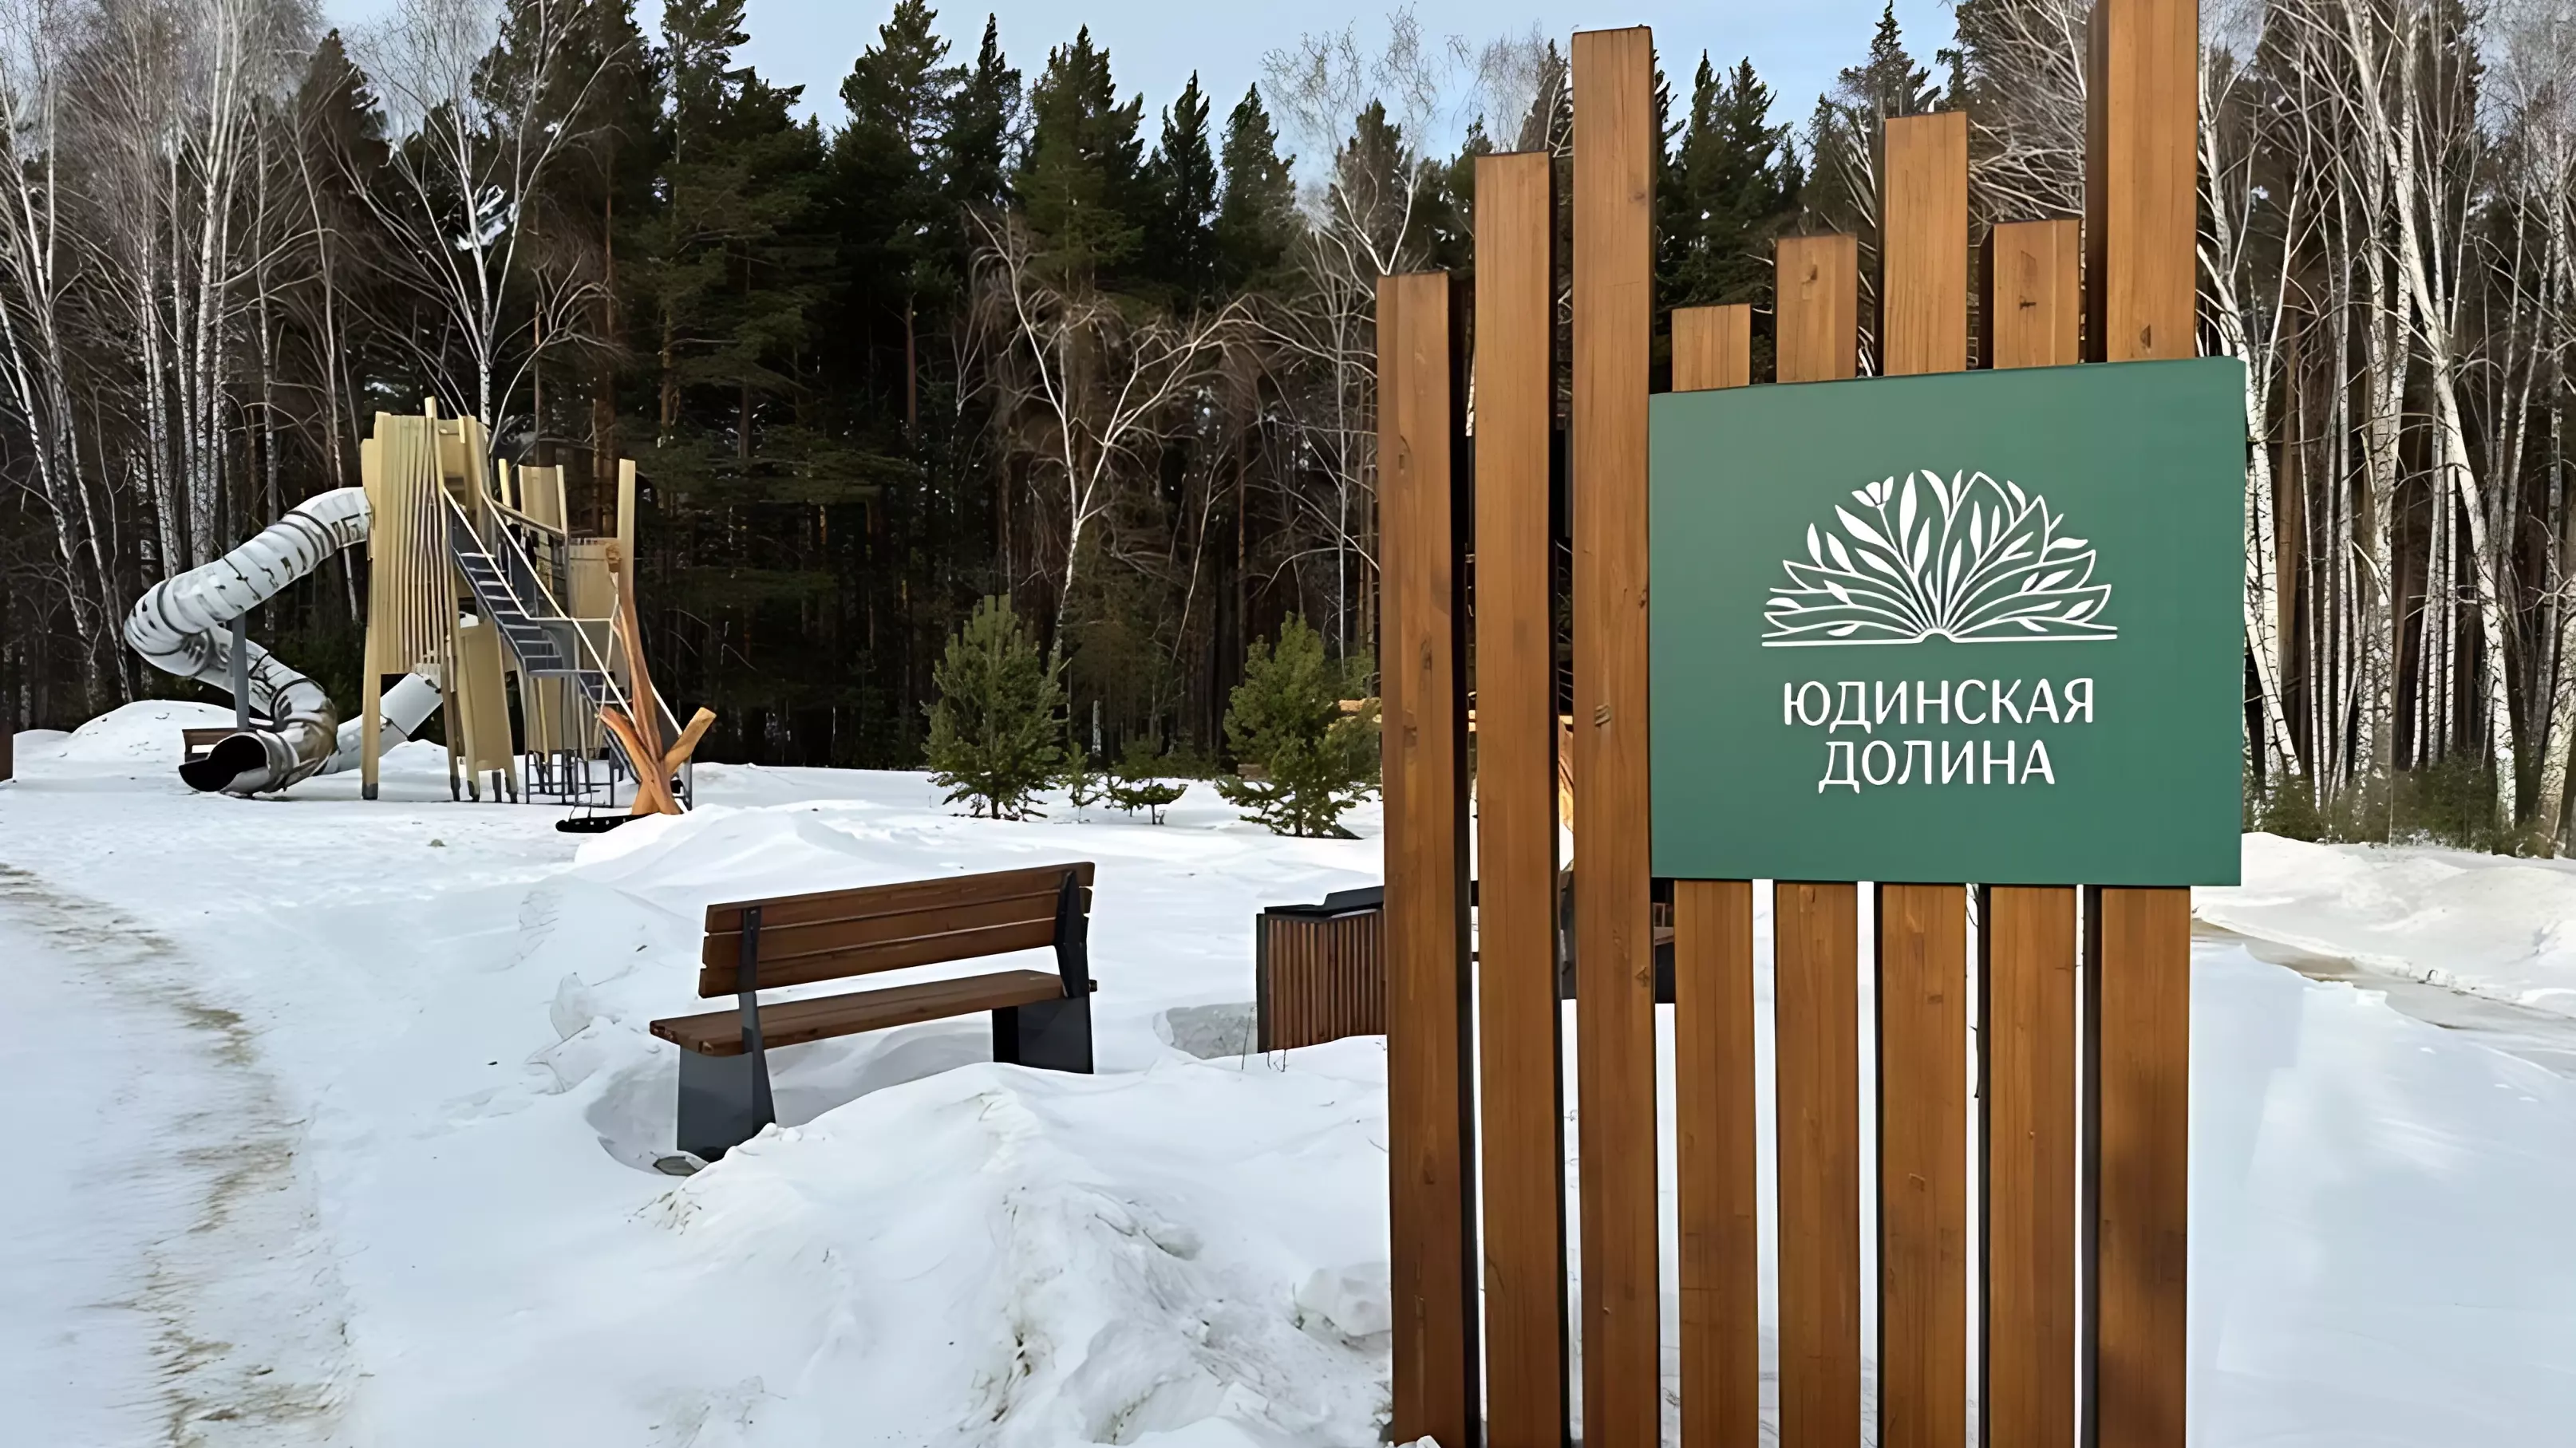 Новый экопарк «Юдинская долина» откроется в Красноярске